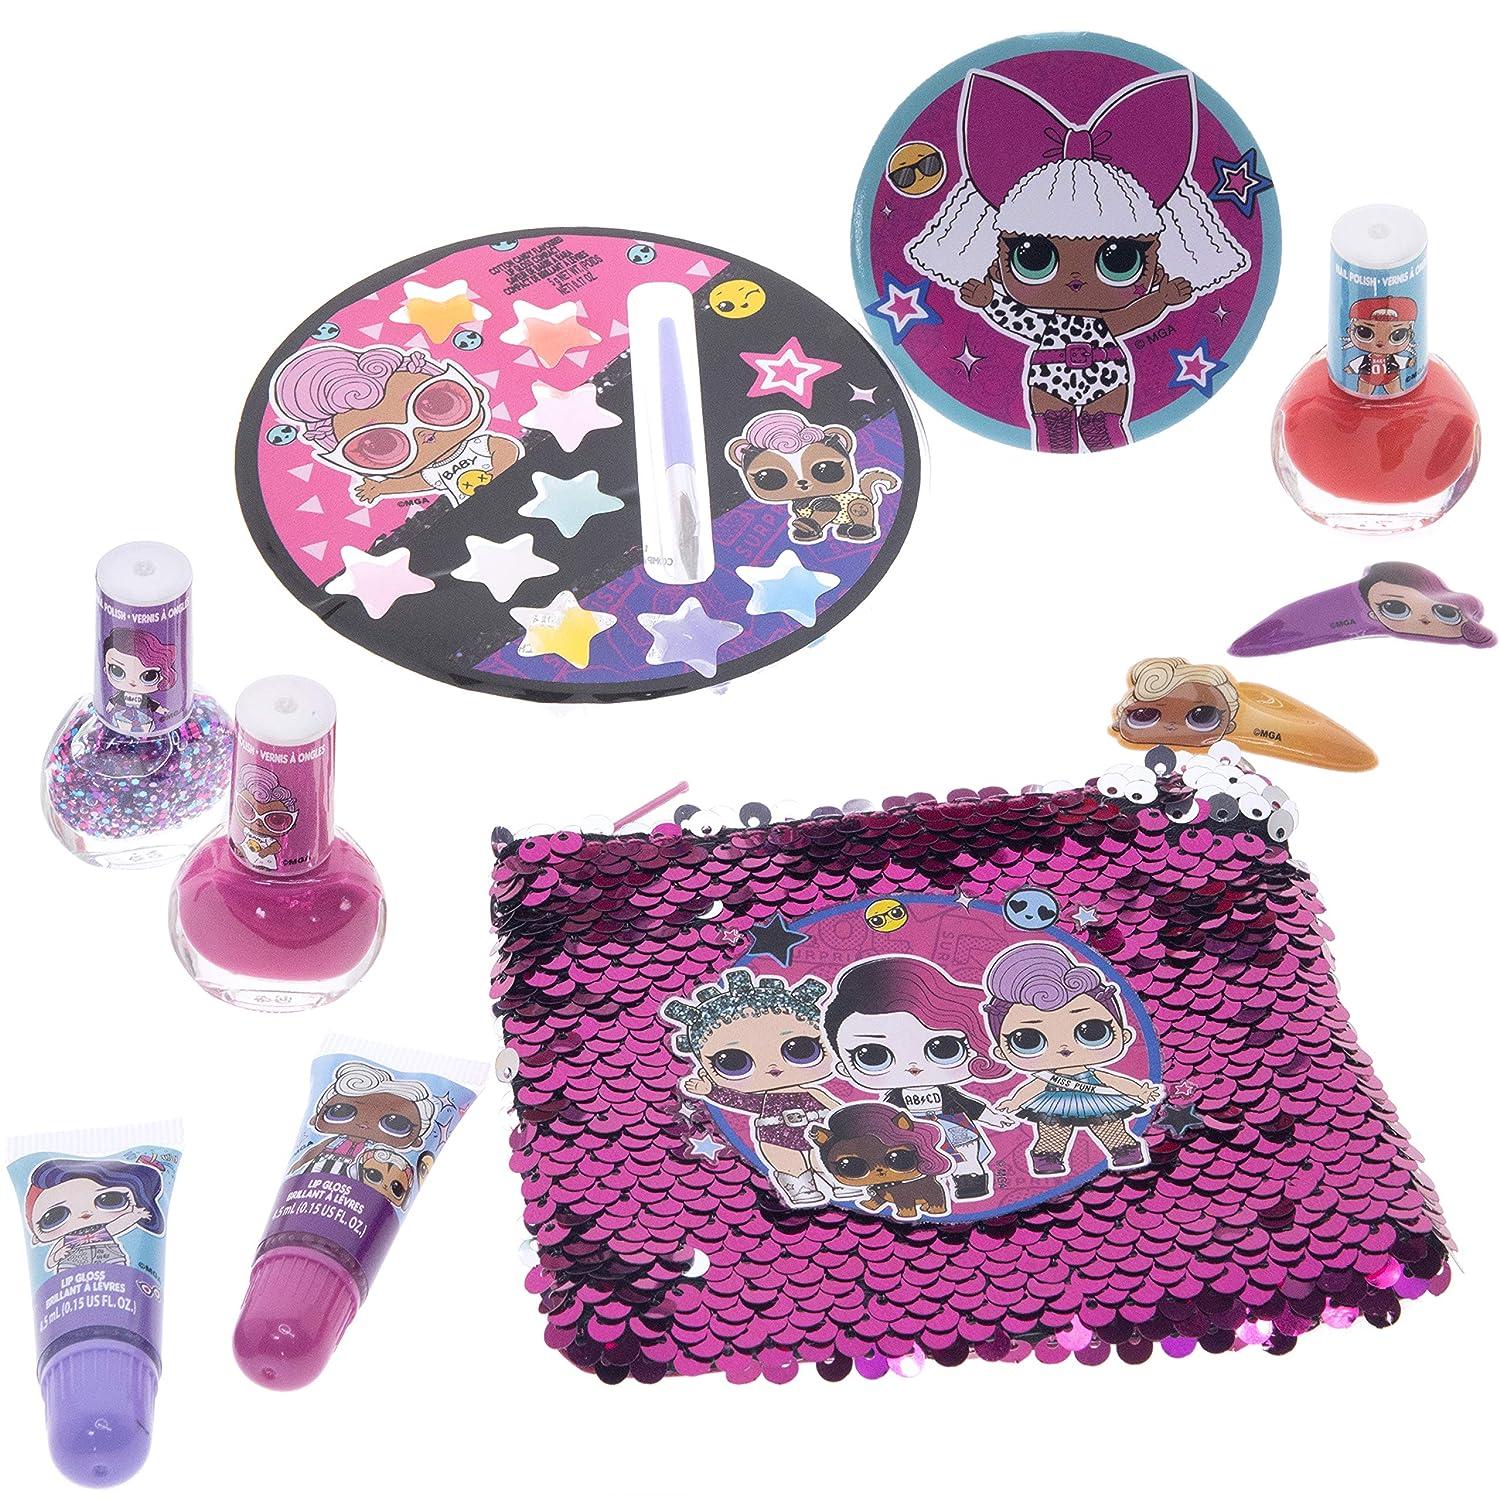 Toys League Small Nail Art Kit For Girls (set Of 3) at Rs 249.00, Nail Art  Kit